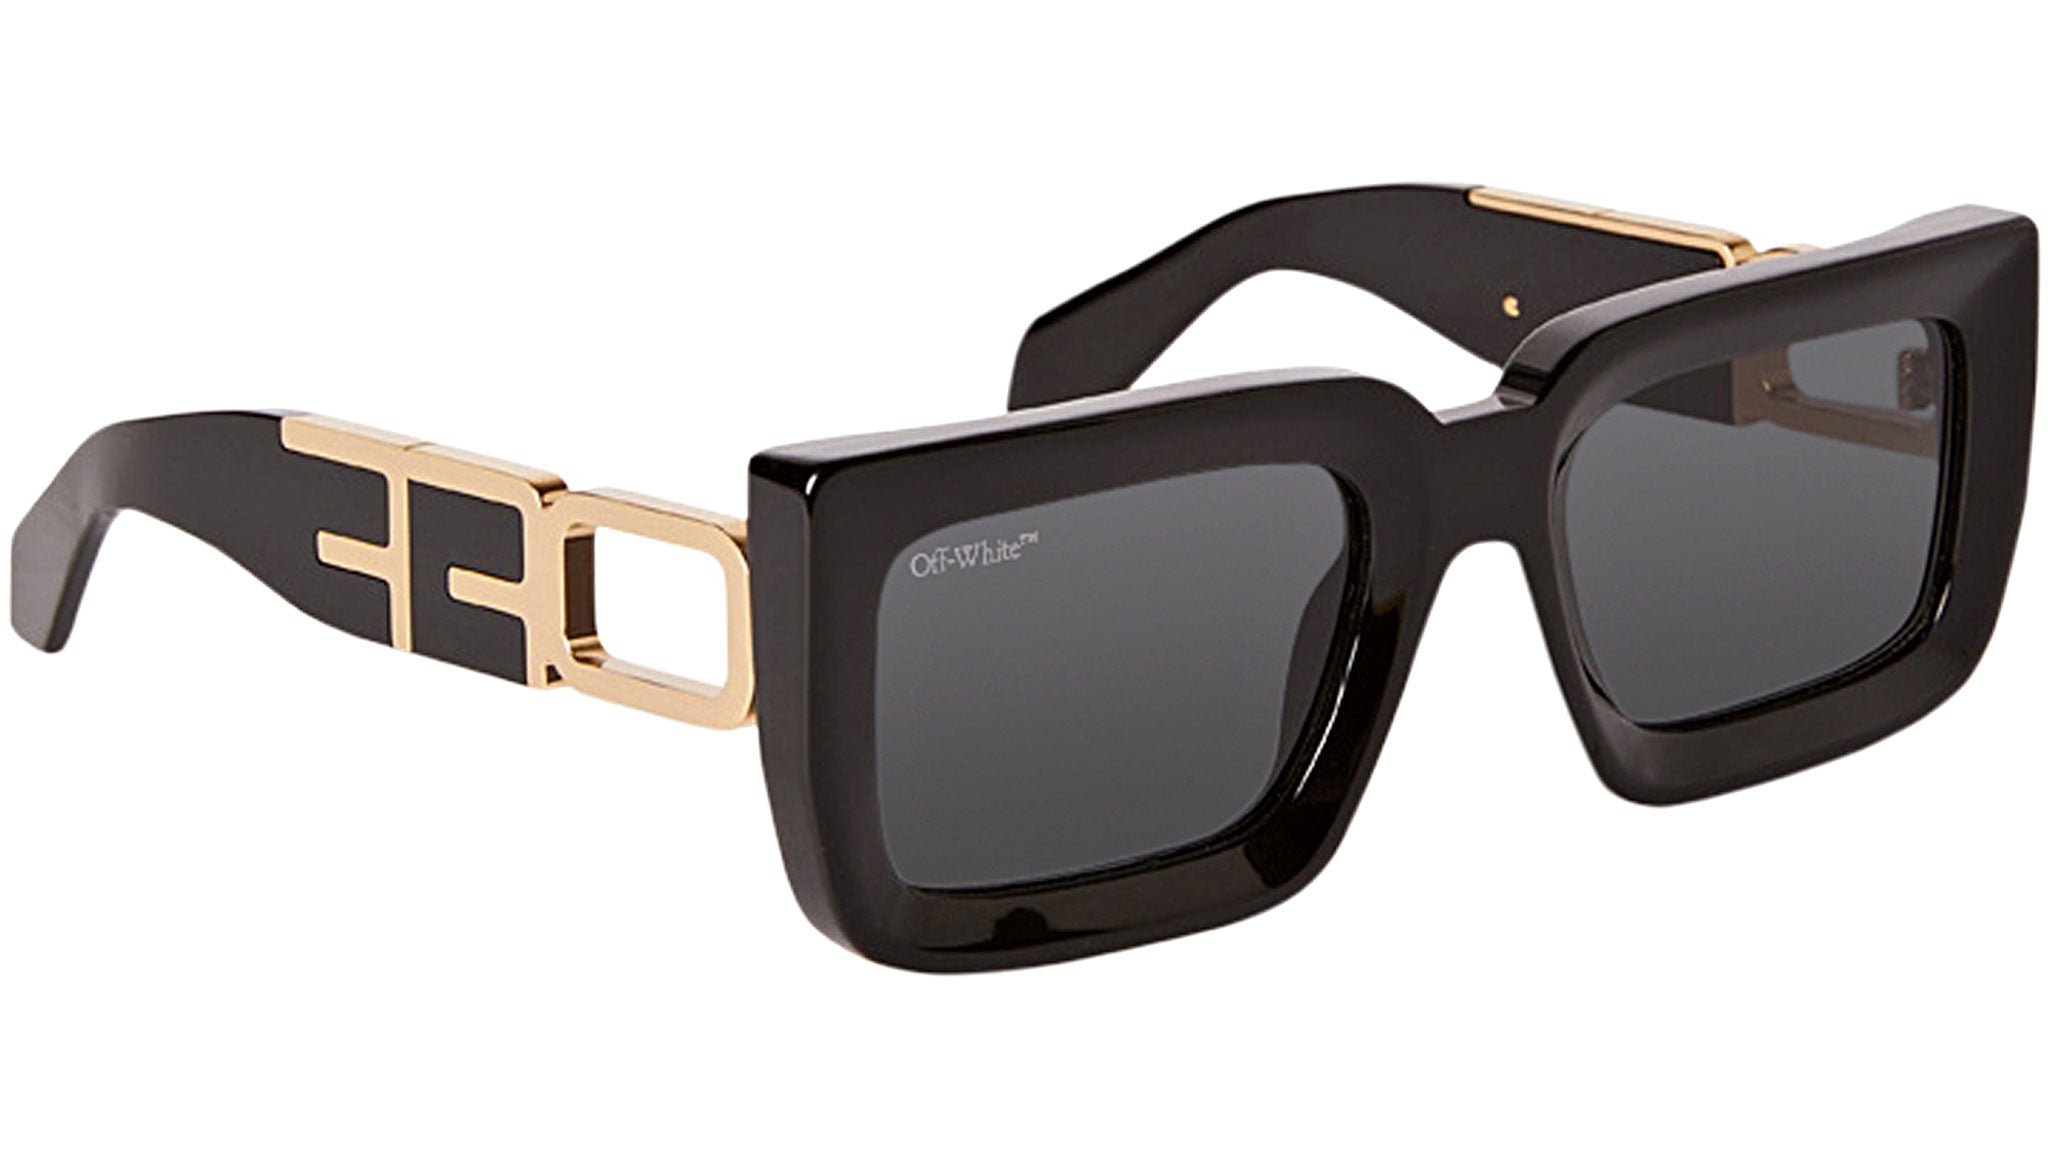 OFF-WHITE: Boston sunglasses in acetate - Black